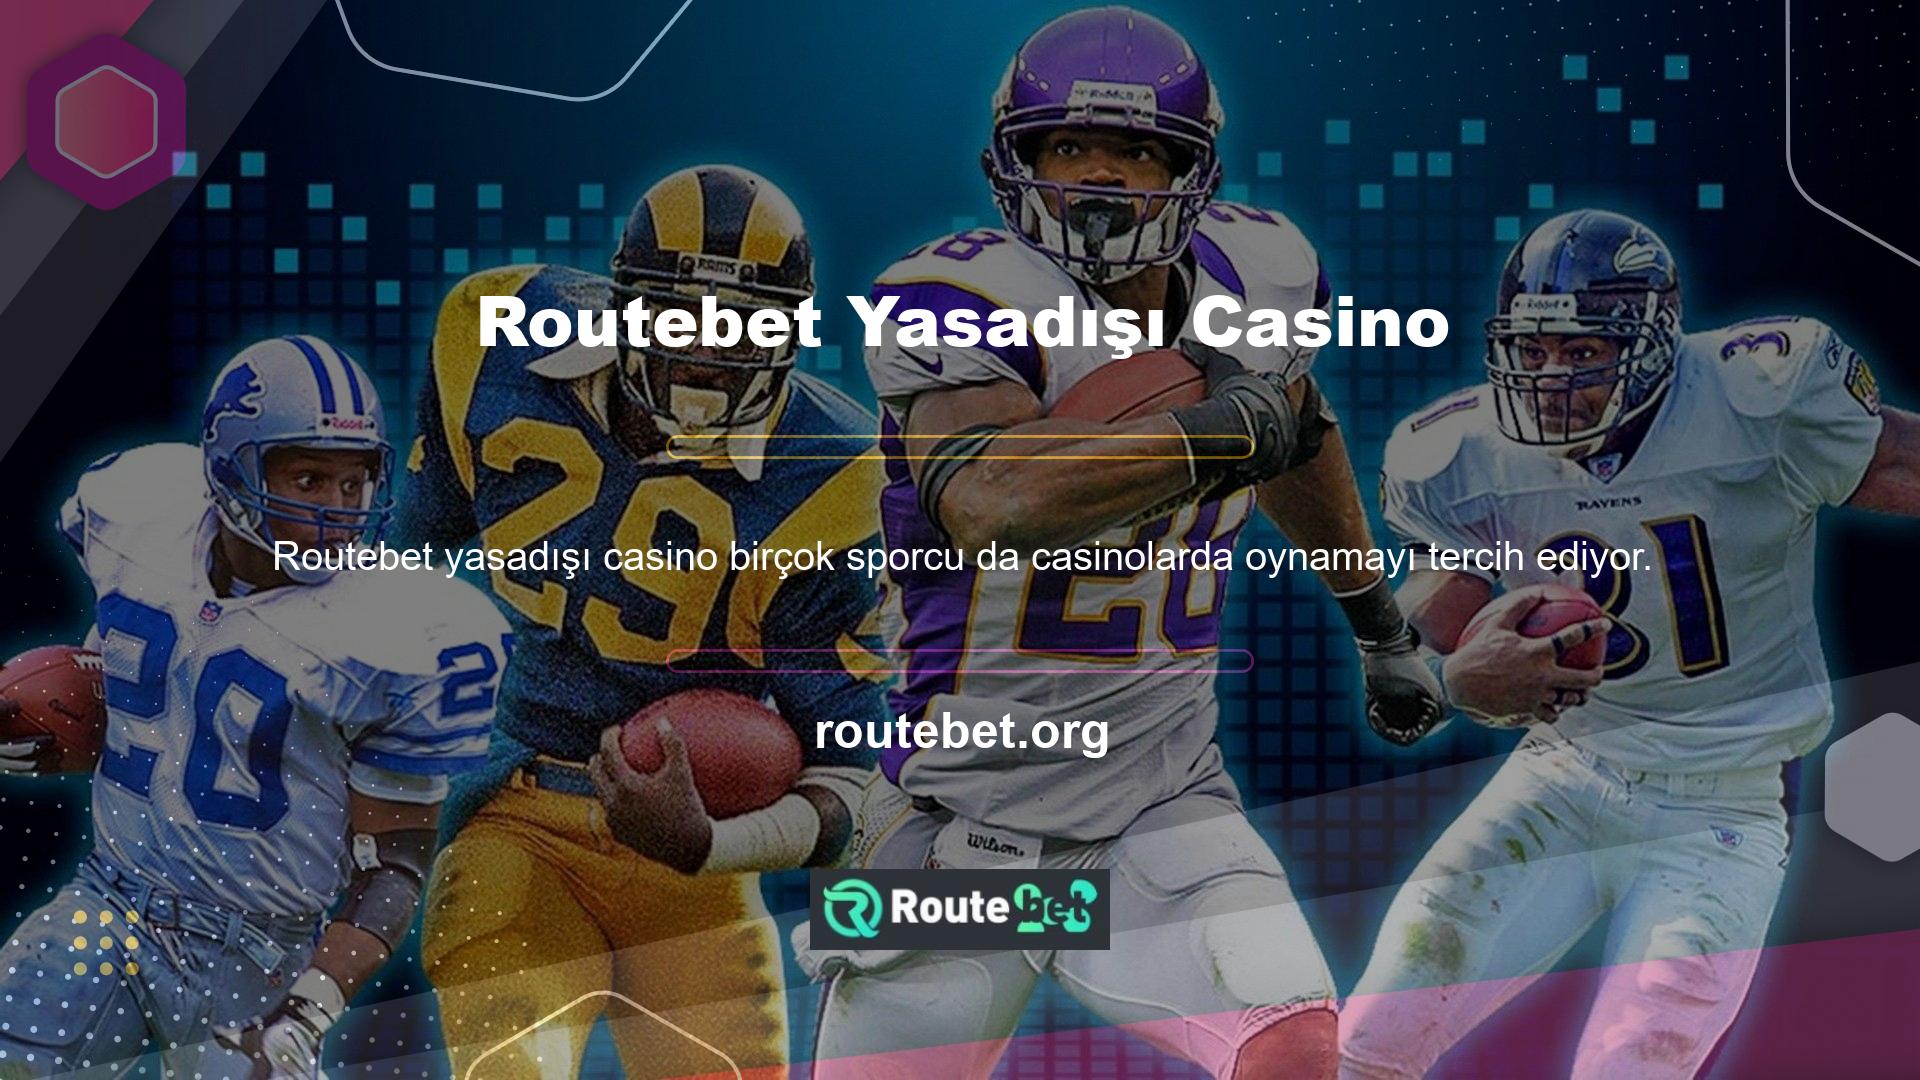 Bu kişilerin çoğu, programlarını çevrimiçi yürütmek için Routebet gibi yasa dışı casino siteleri gibi şirketleri tercih ediyor